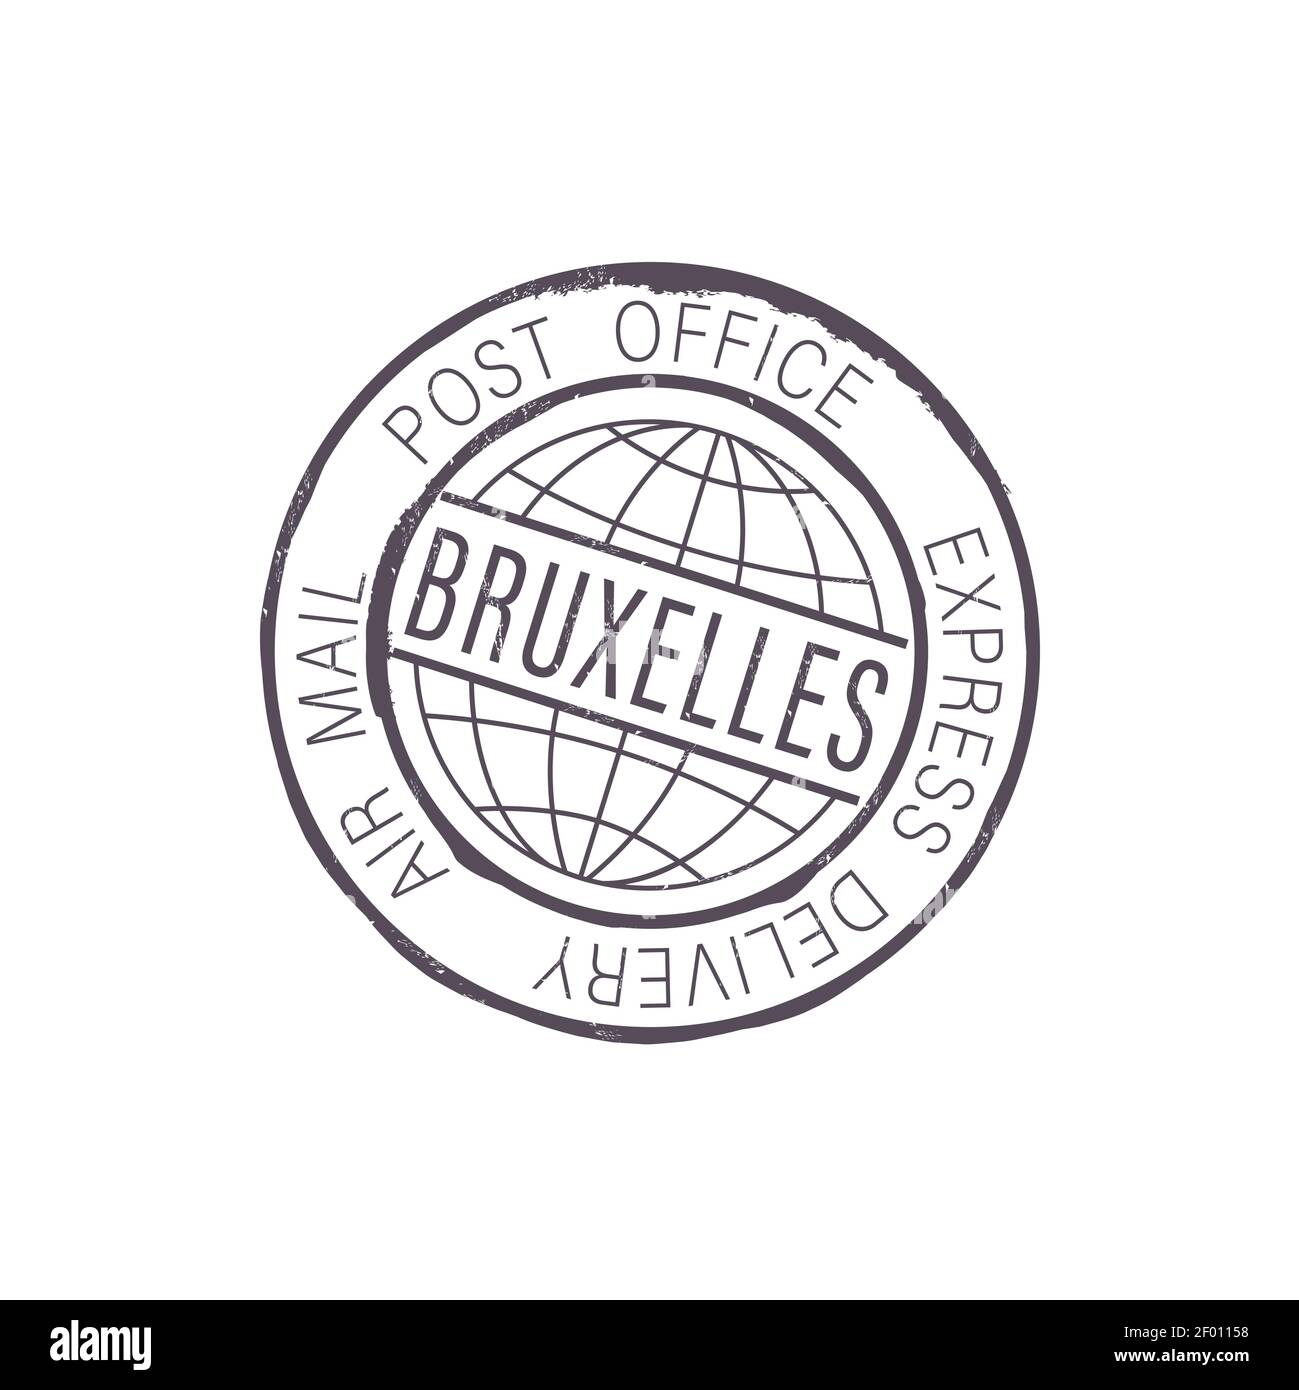 Città di Bruxelles timbro dell'ufficio postale simbolo di recapito espresso della posta aerea isolata. Vector Bruxelles International Postal Global Service icona, emblema dell'olandese Illustrazione Vettoriale